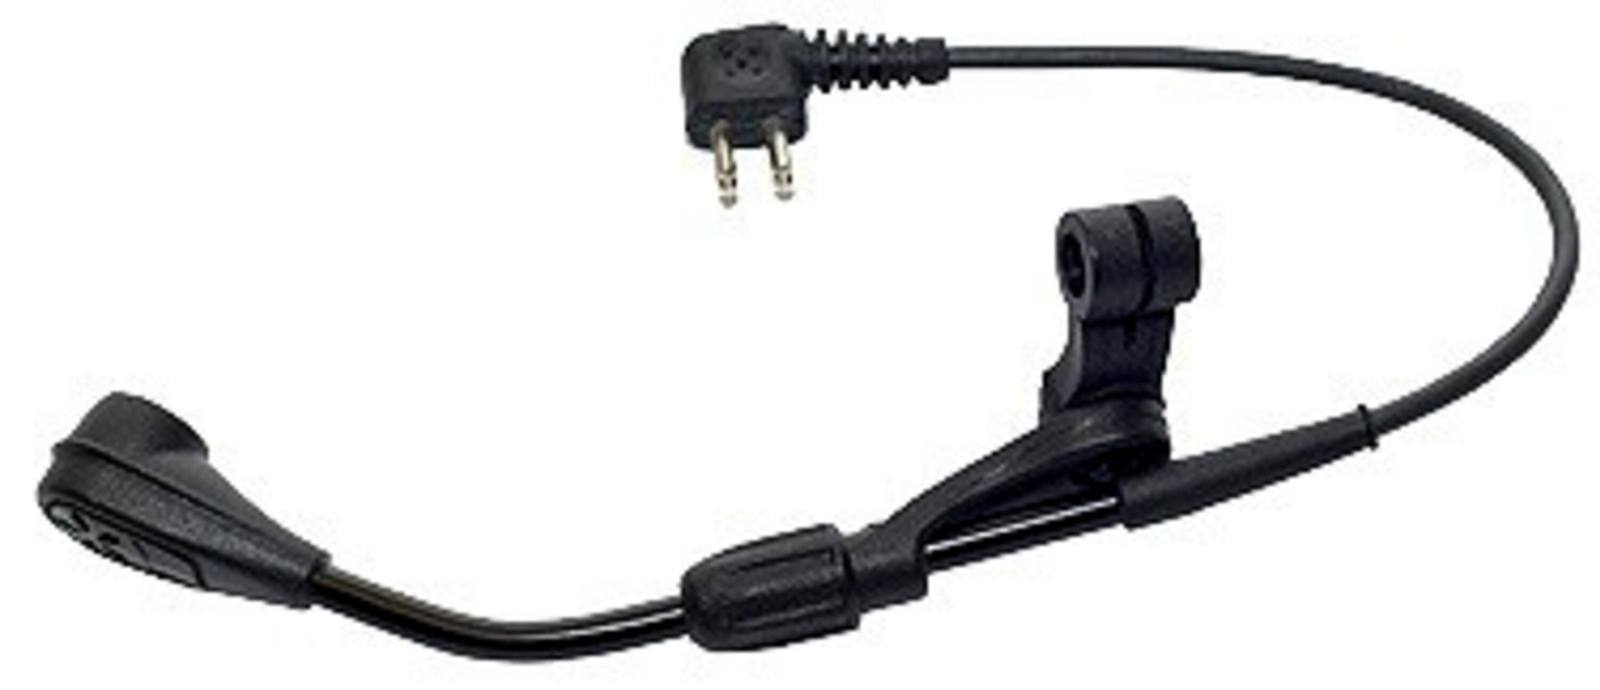 3M PELTOR Microphone électret à branches MT53N-14/1, avec fiche, 240 mm, bonnette anti-vent incluse, M995/2